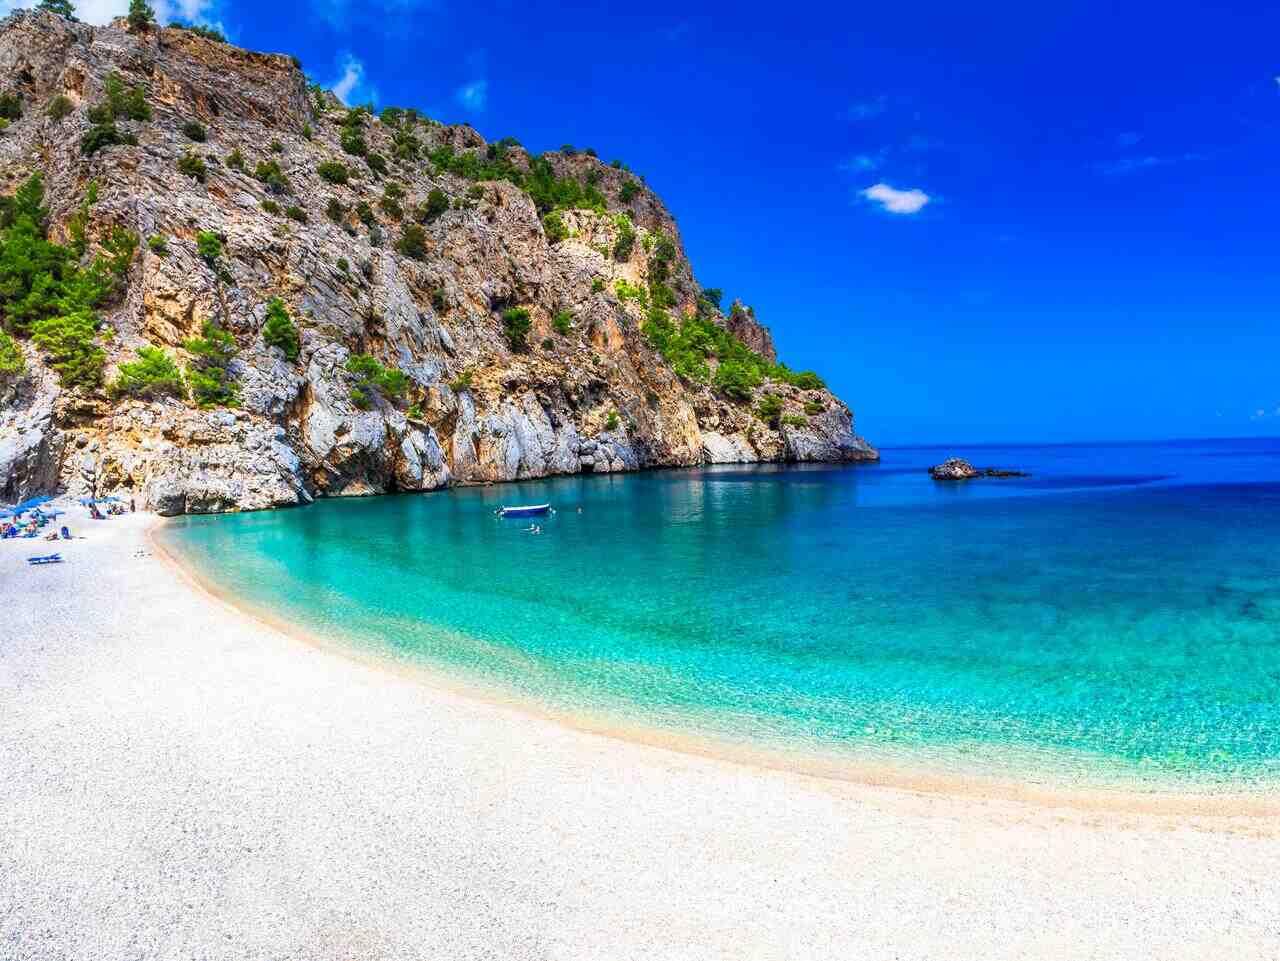 Galeria de imagens 3: Qual ilha grega tem as praias mais bonitas?